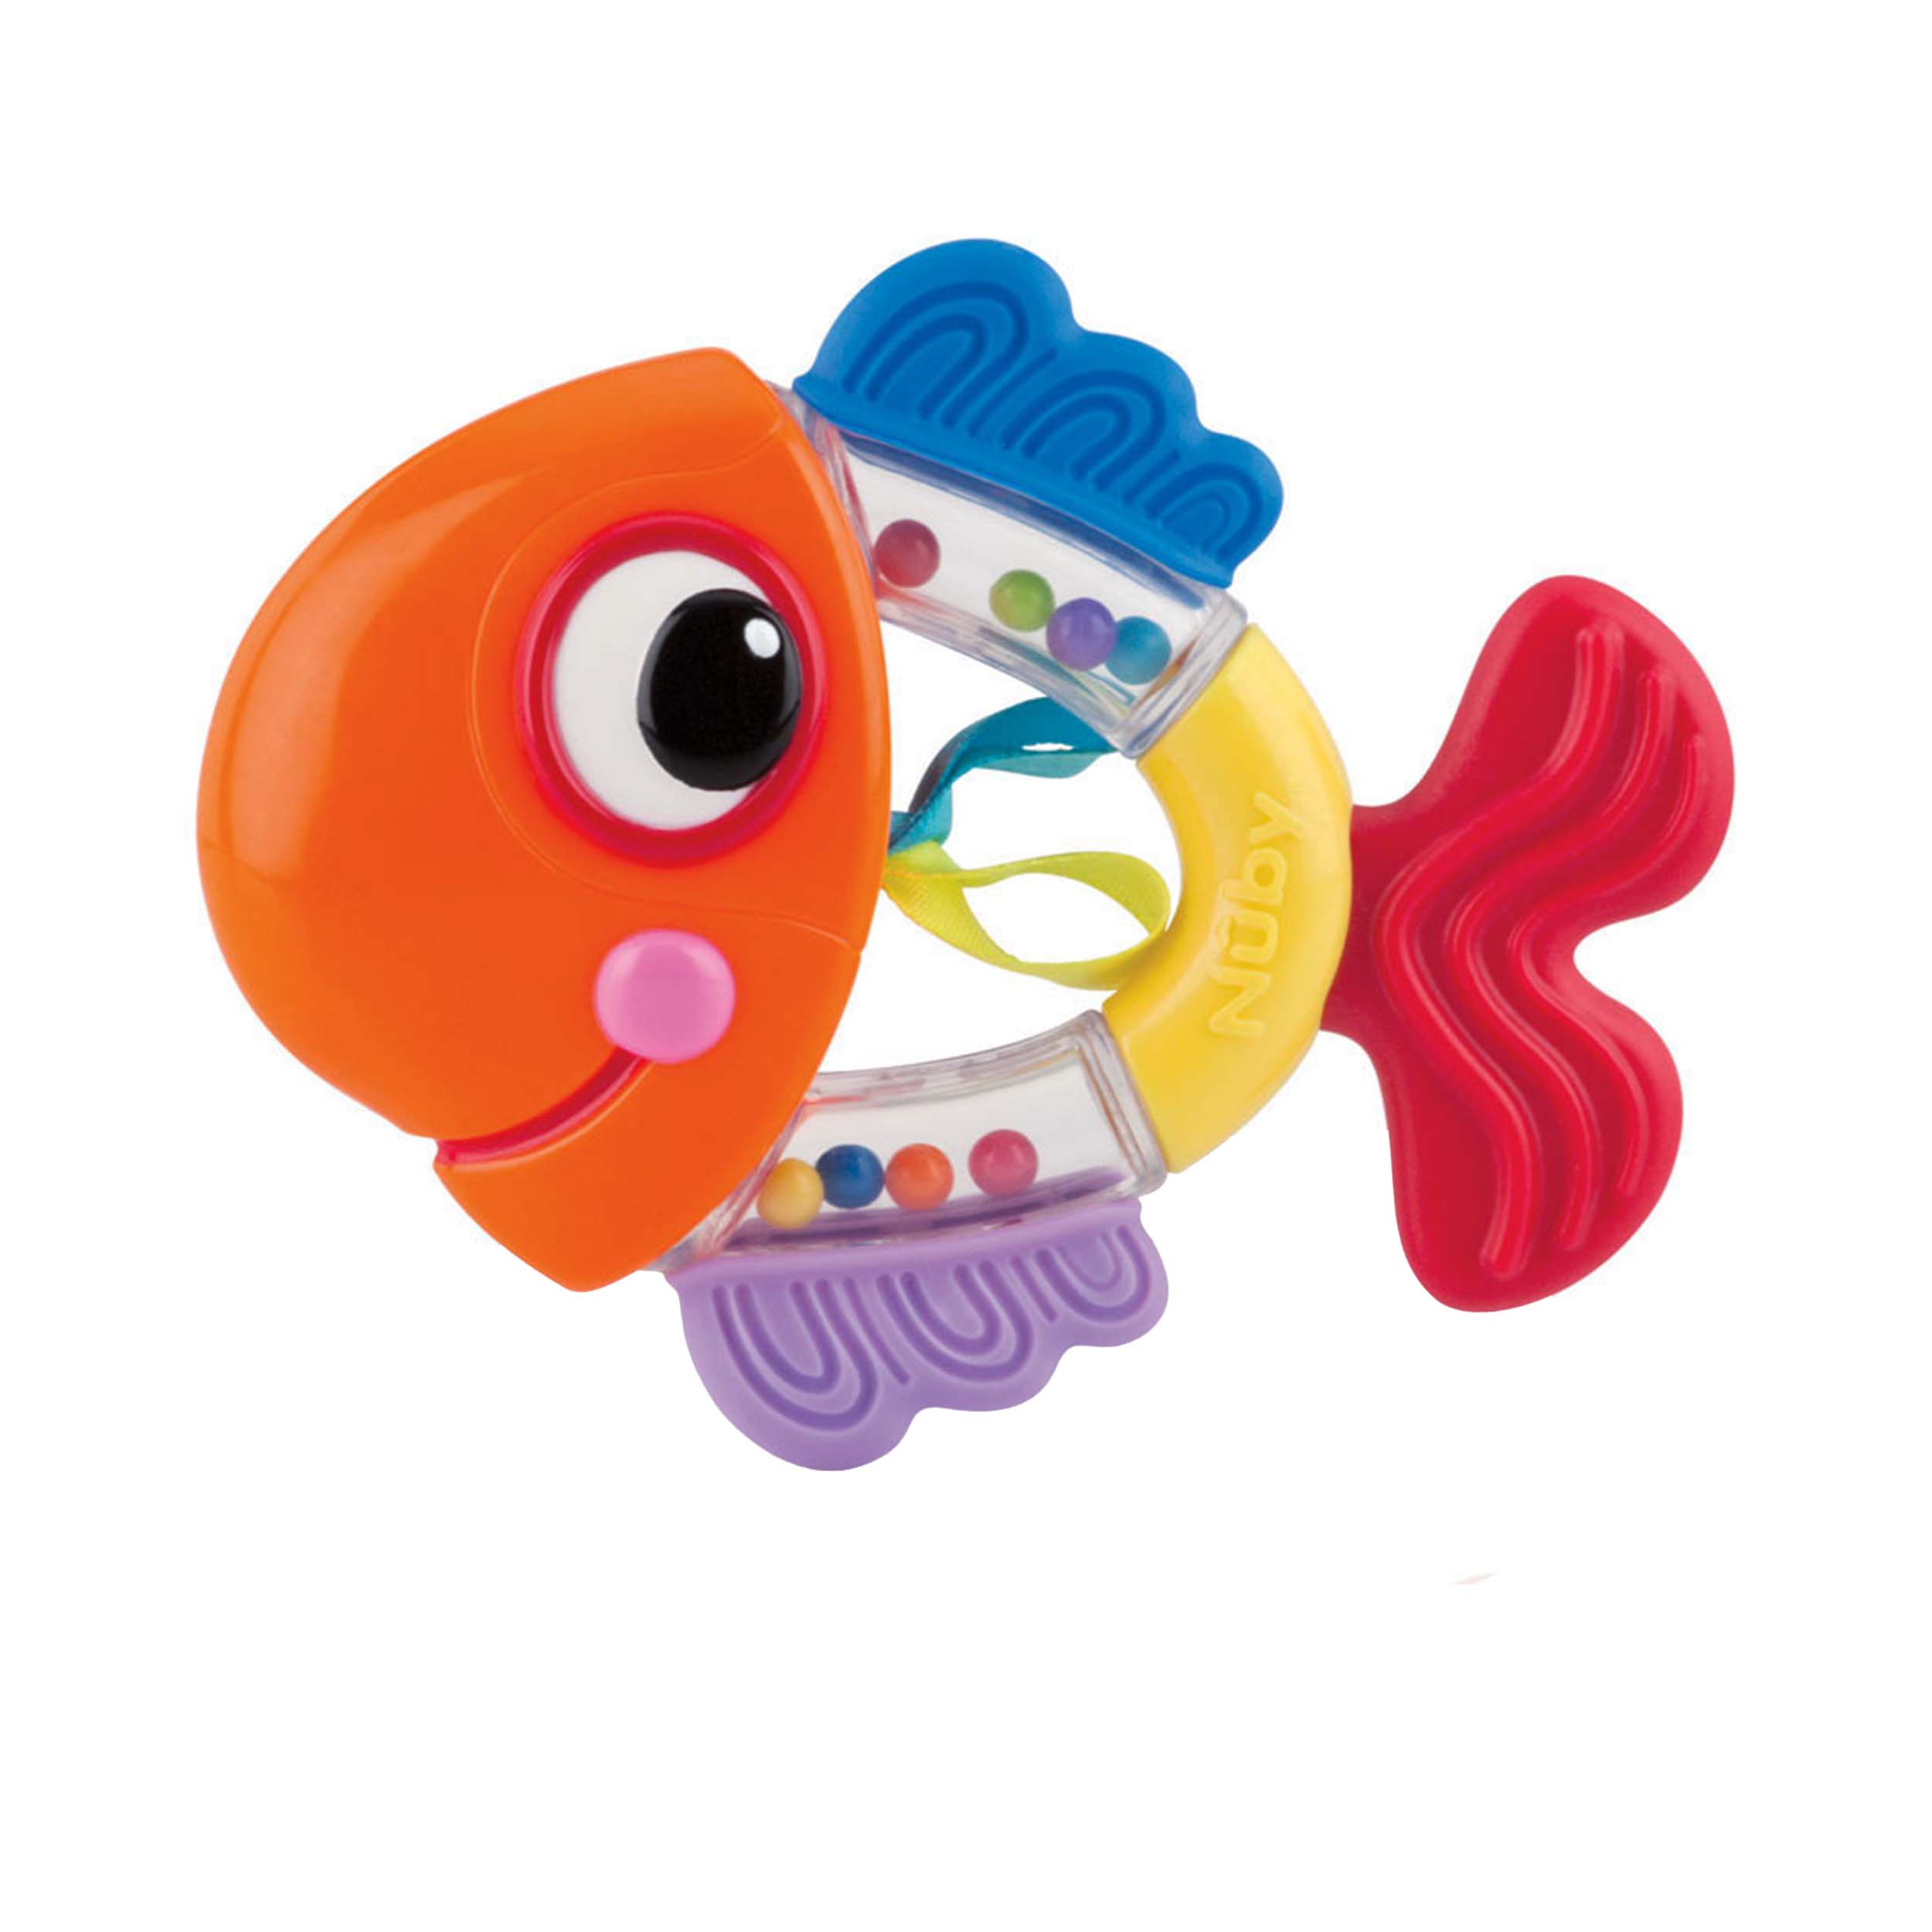 جغجغه ودندان گیر کودک نوبی مدل Id686.1 طرح ماهی